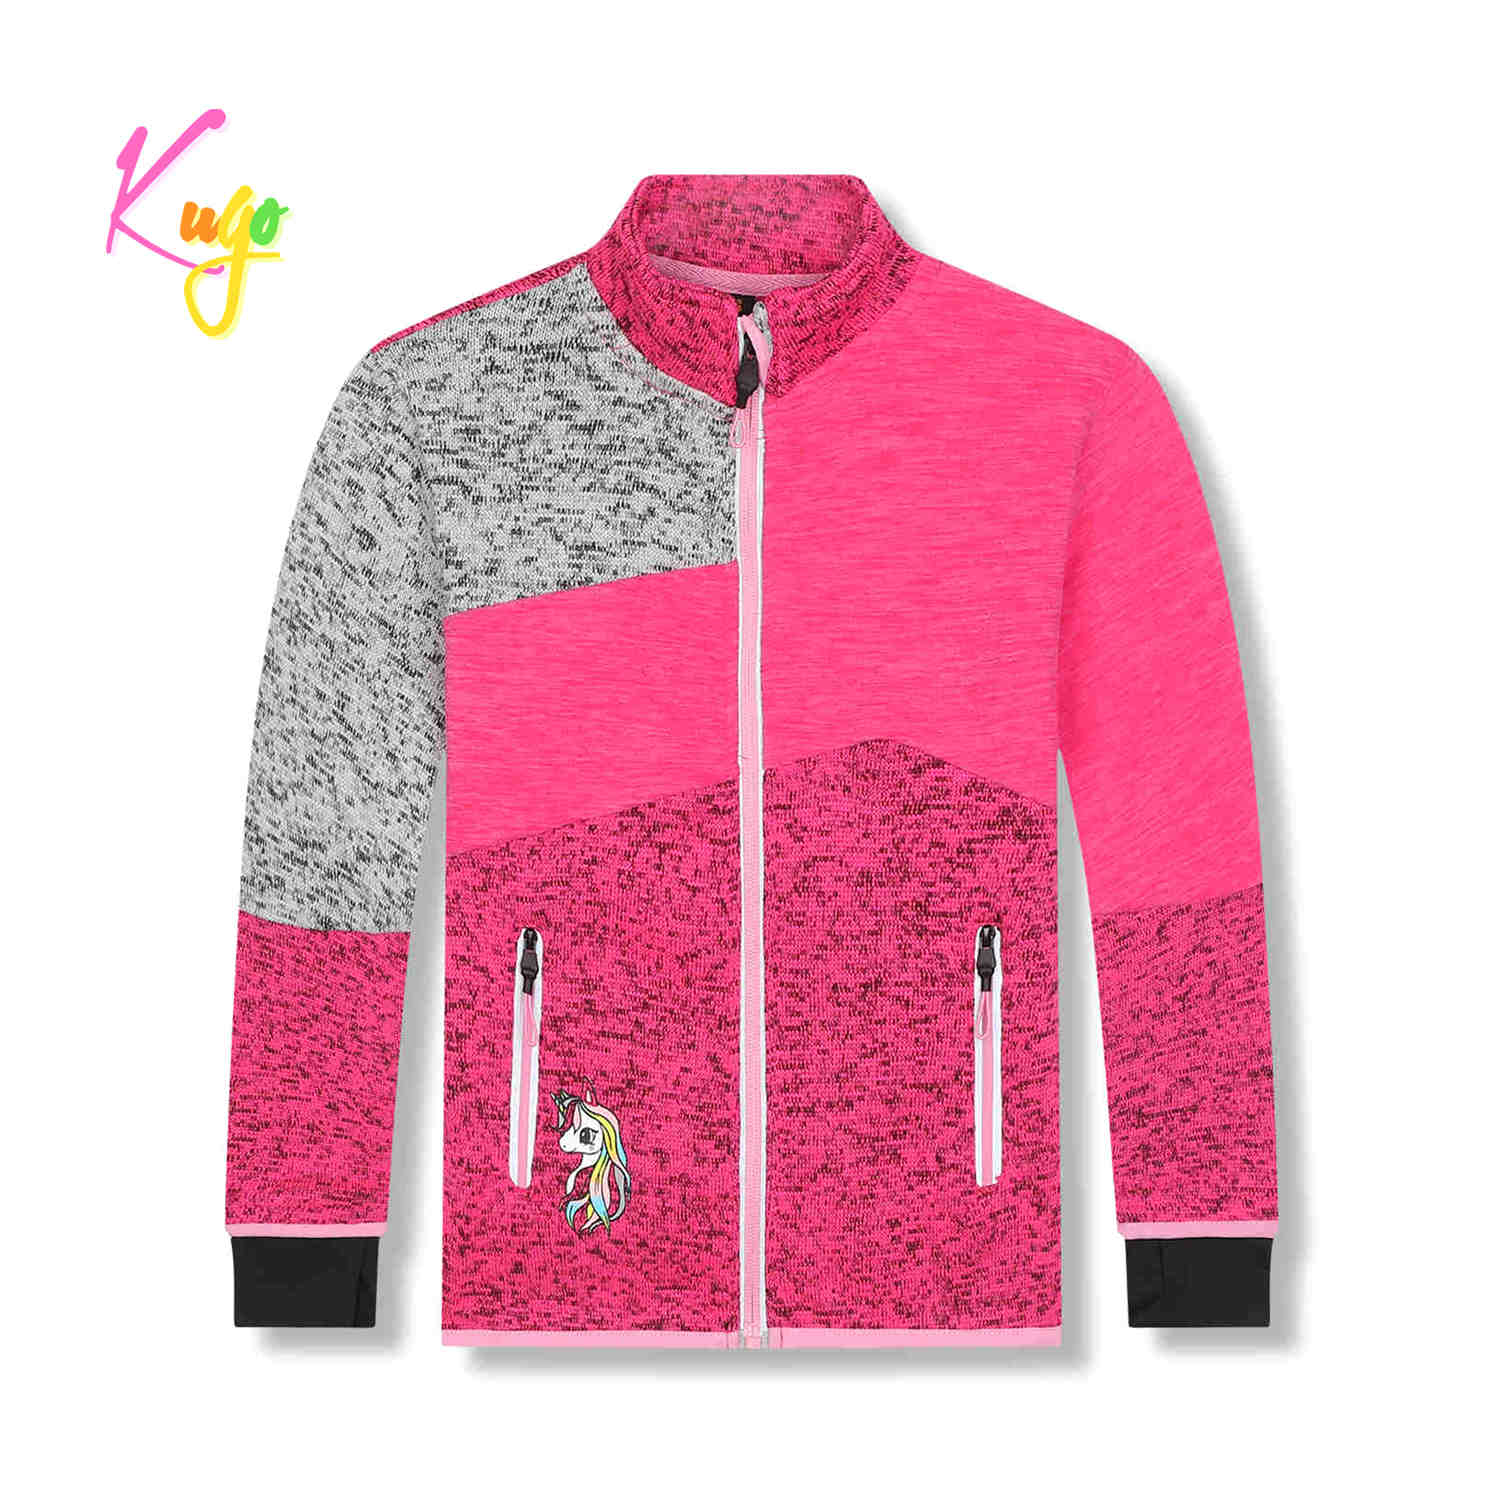 Dívčí outdoorová mikina - KUGO HM1981, růžová Barva: Růžová, Velikost: 116